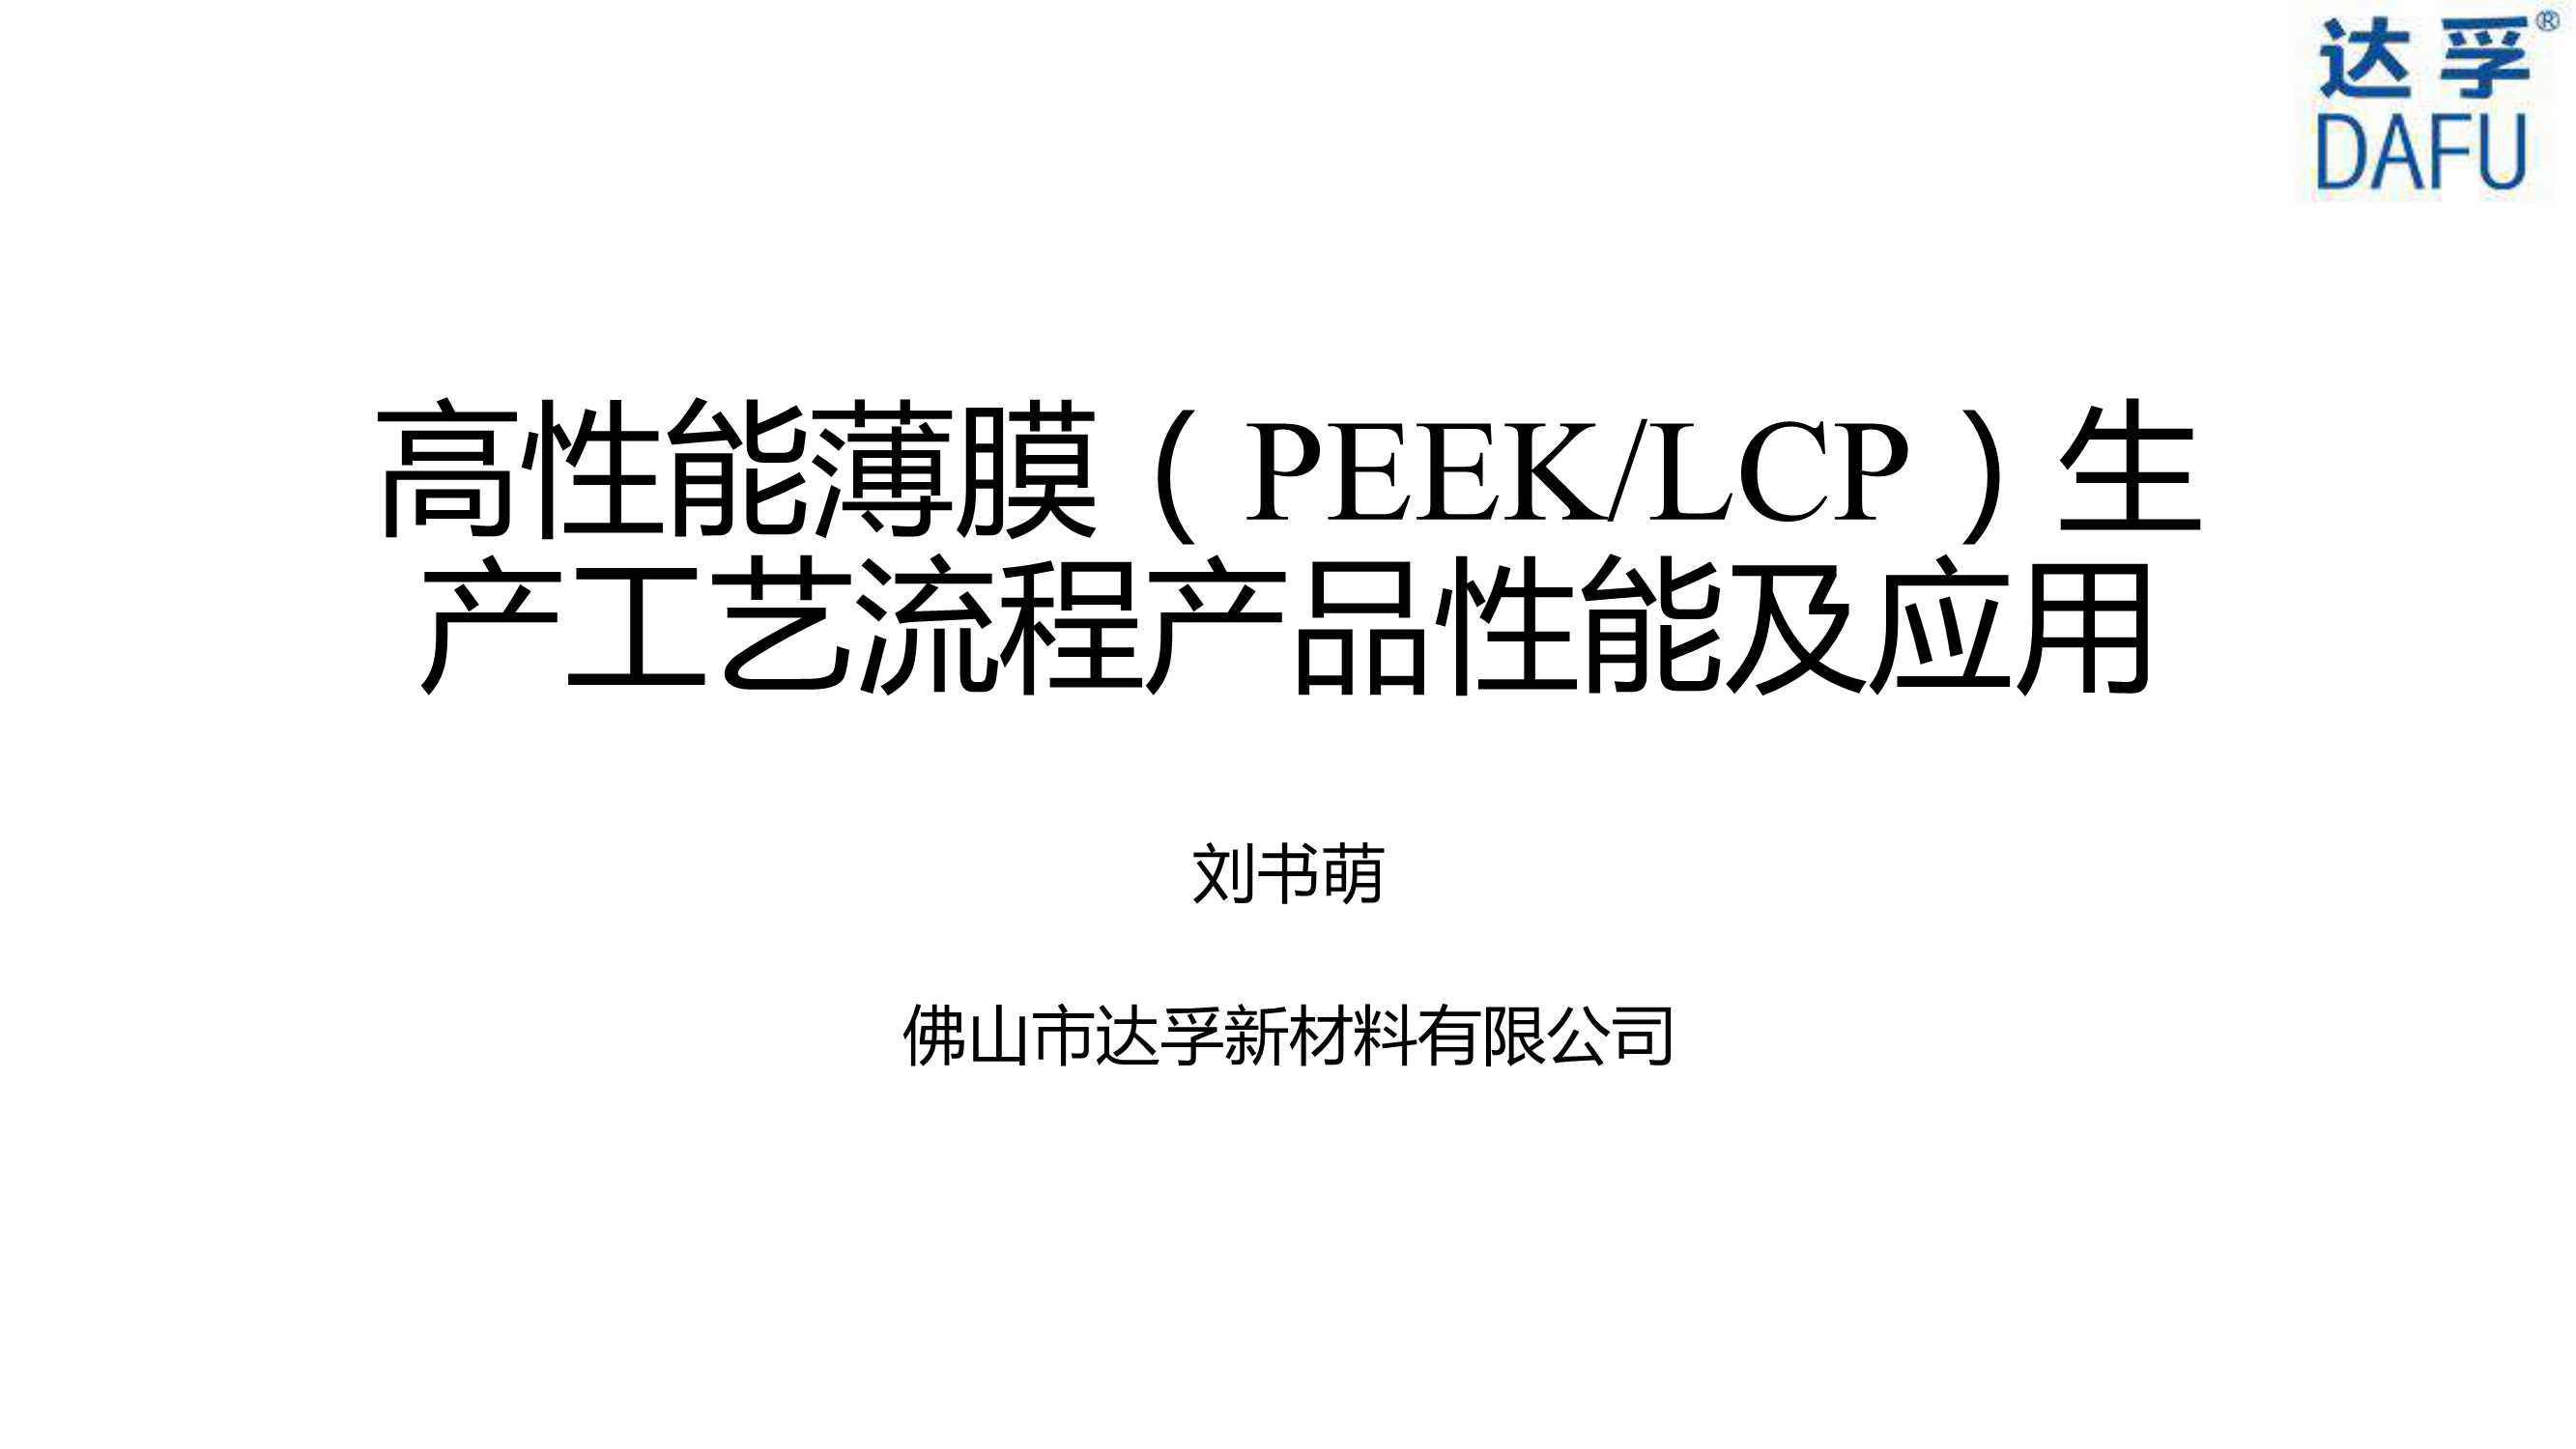 达孚刘书萌-高性能薄膜PEEK-LCP生产工艺流程产品性能及应用-2021.05-19页